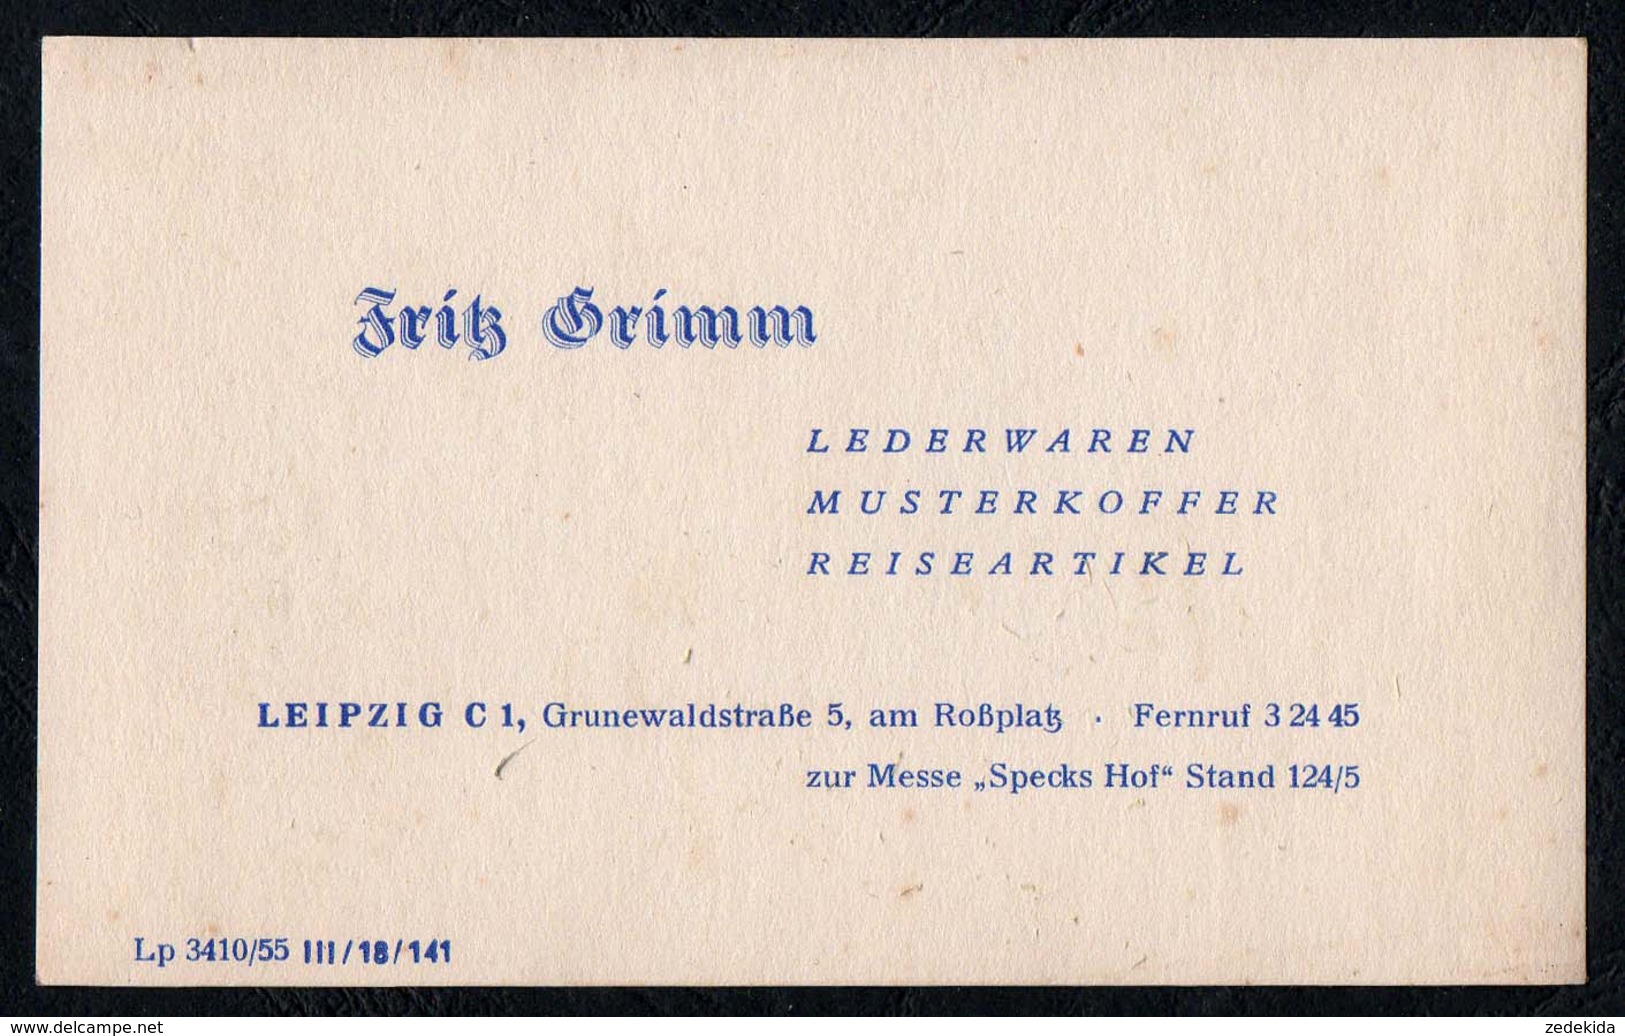 C3774 - Fritz Grimm - Lederwaren Koffer Reiseartikel Leipzig - Visitenkarte DDR - Visitenkarten